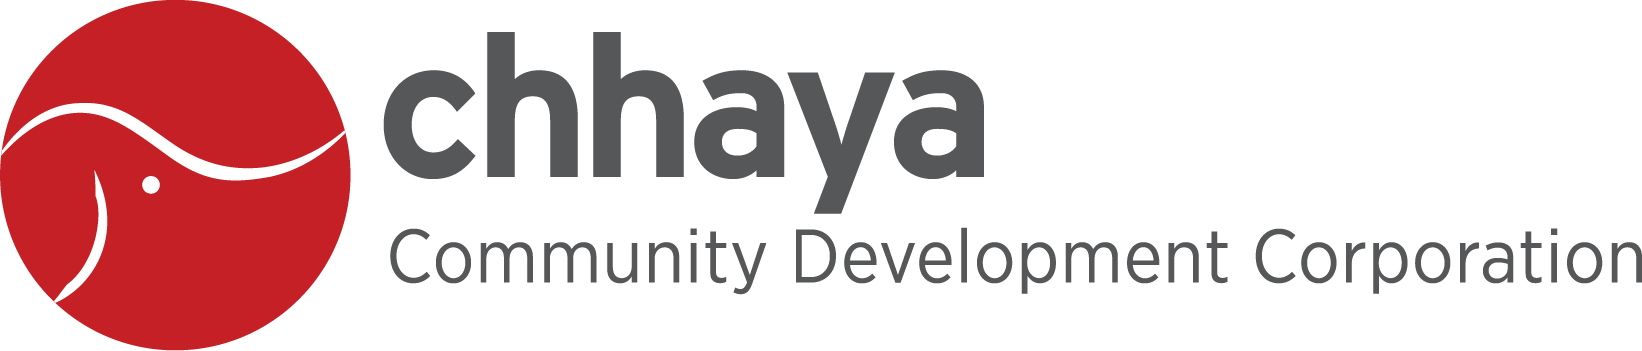 Chhaya_Logo (1).png